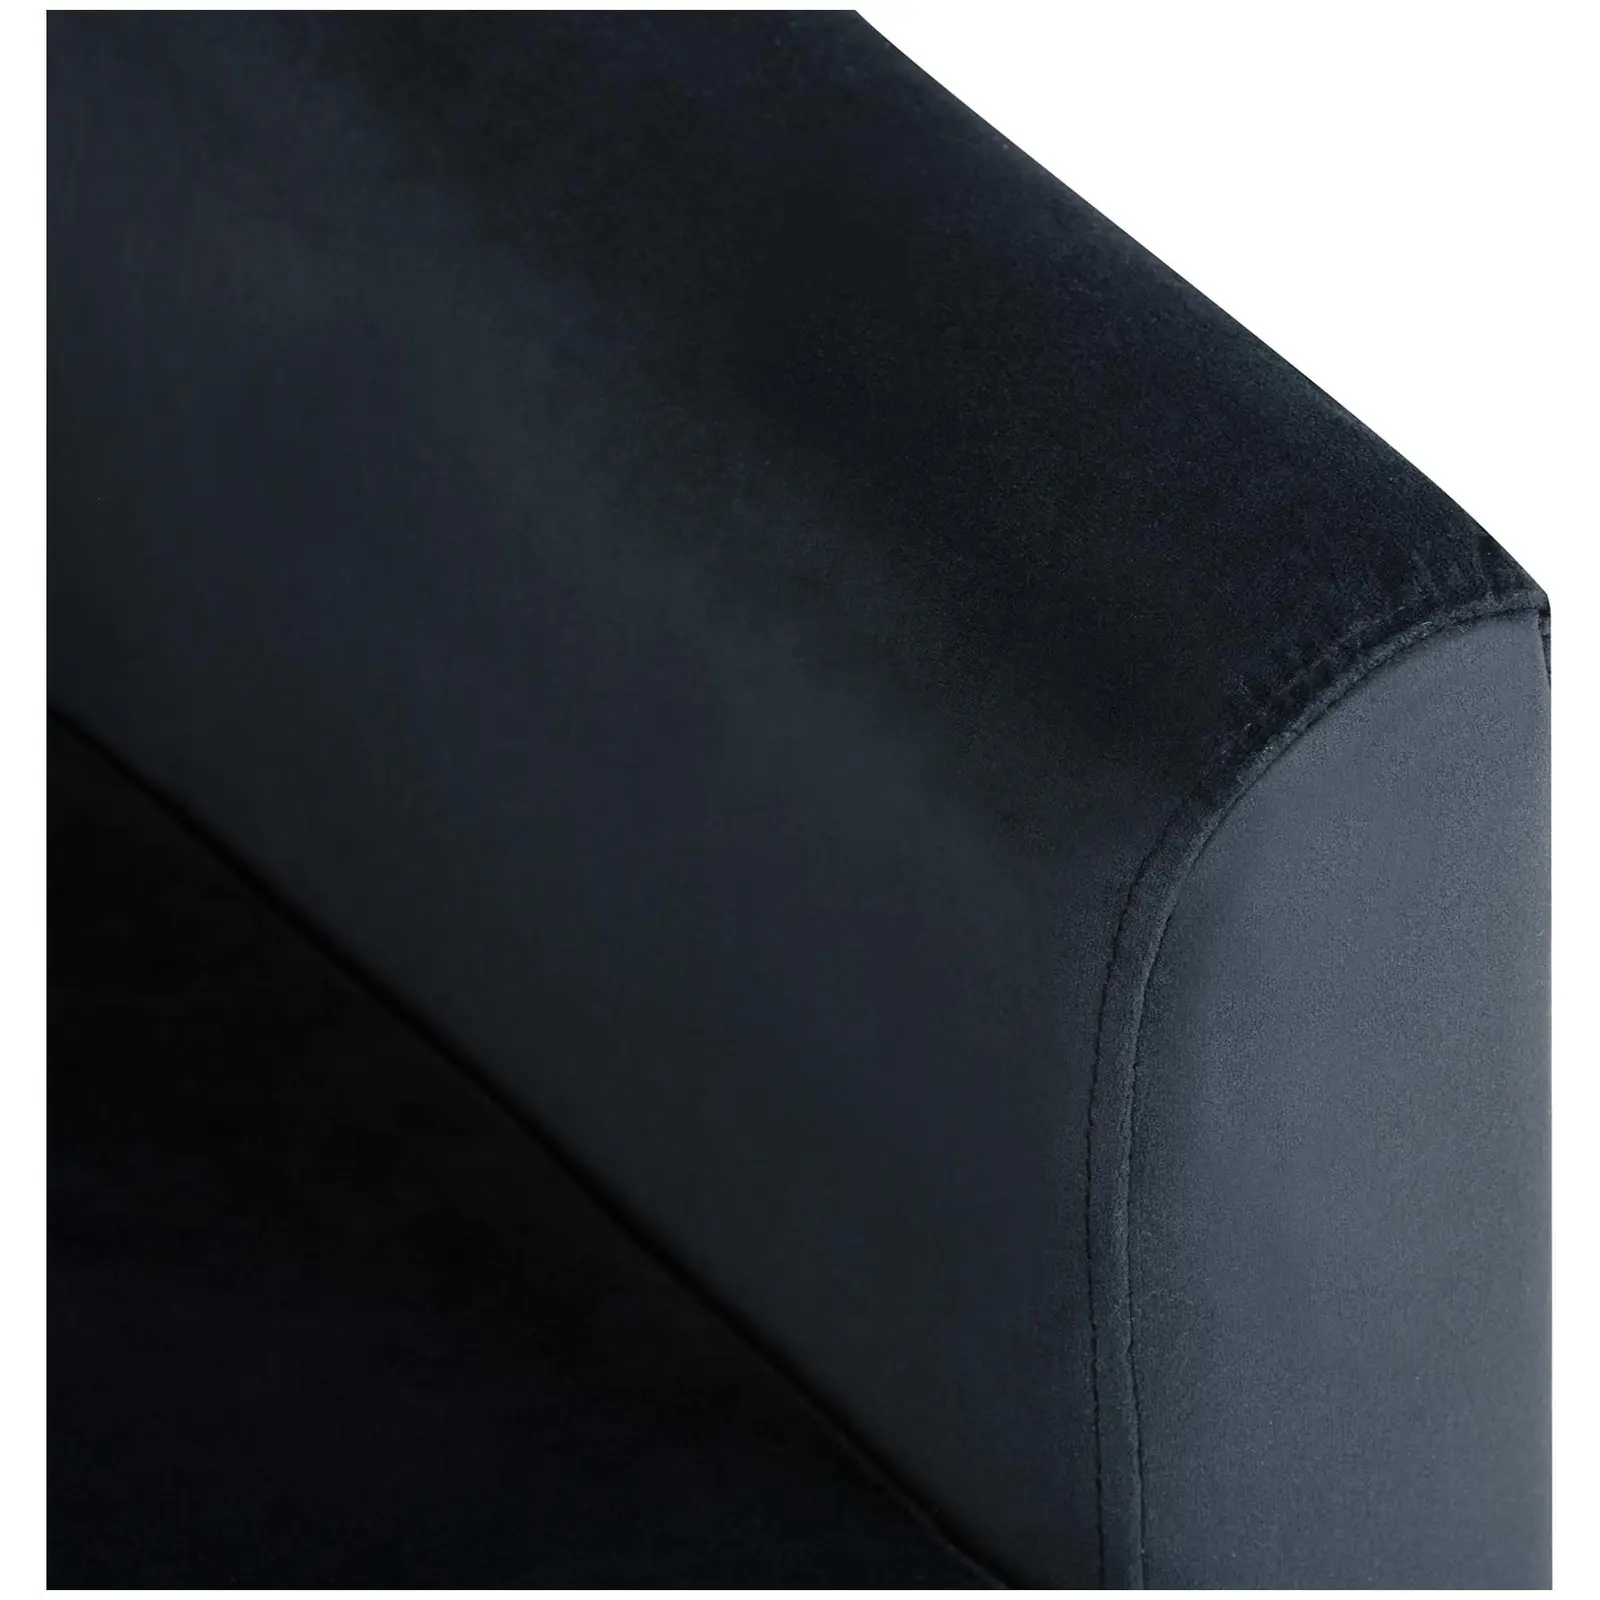 Lænestol - maks. 180 kg - sæde 49 x 53 cm - sort